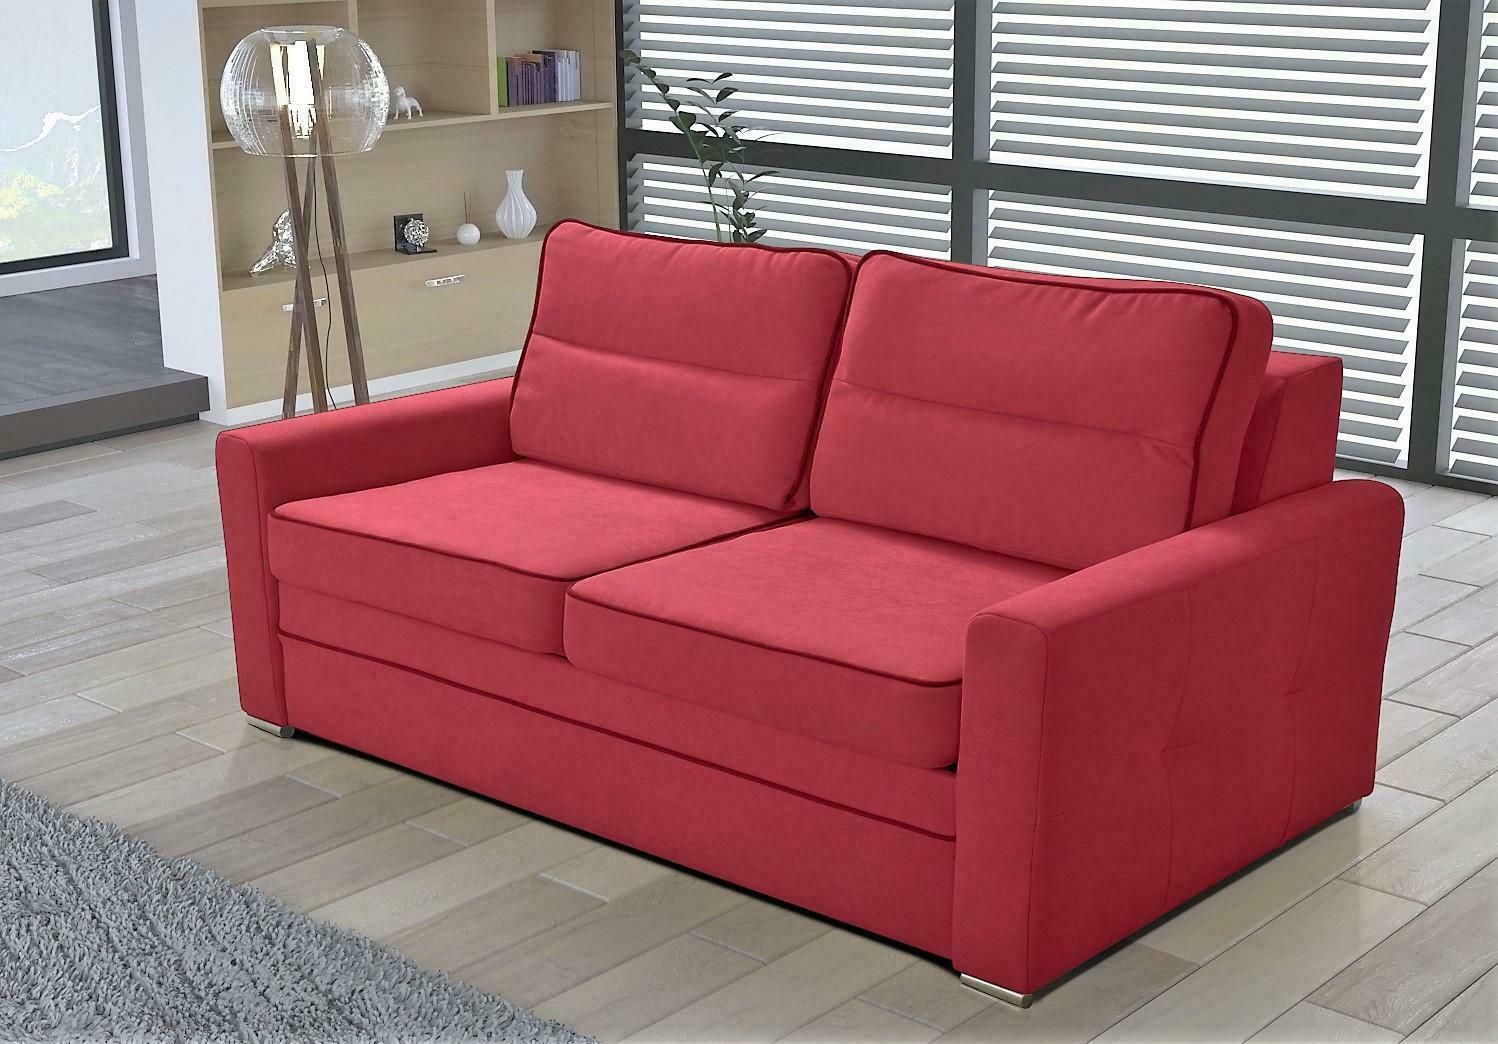 Schlafsofa Klappcouch Bett Sofa Couchen Sofas Couch Luxus Textil Polster 170cm